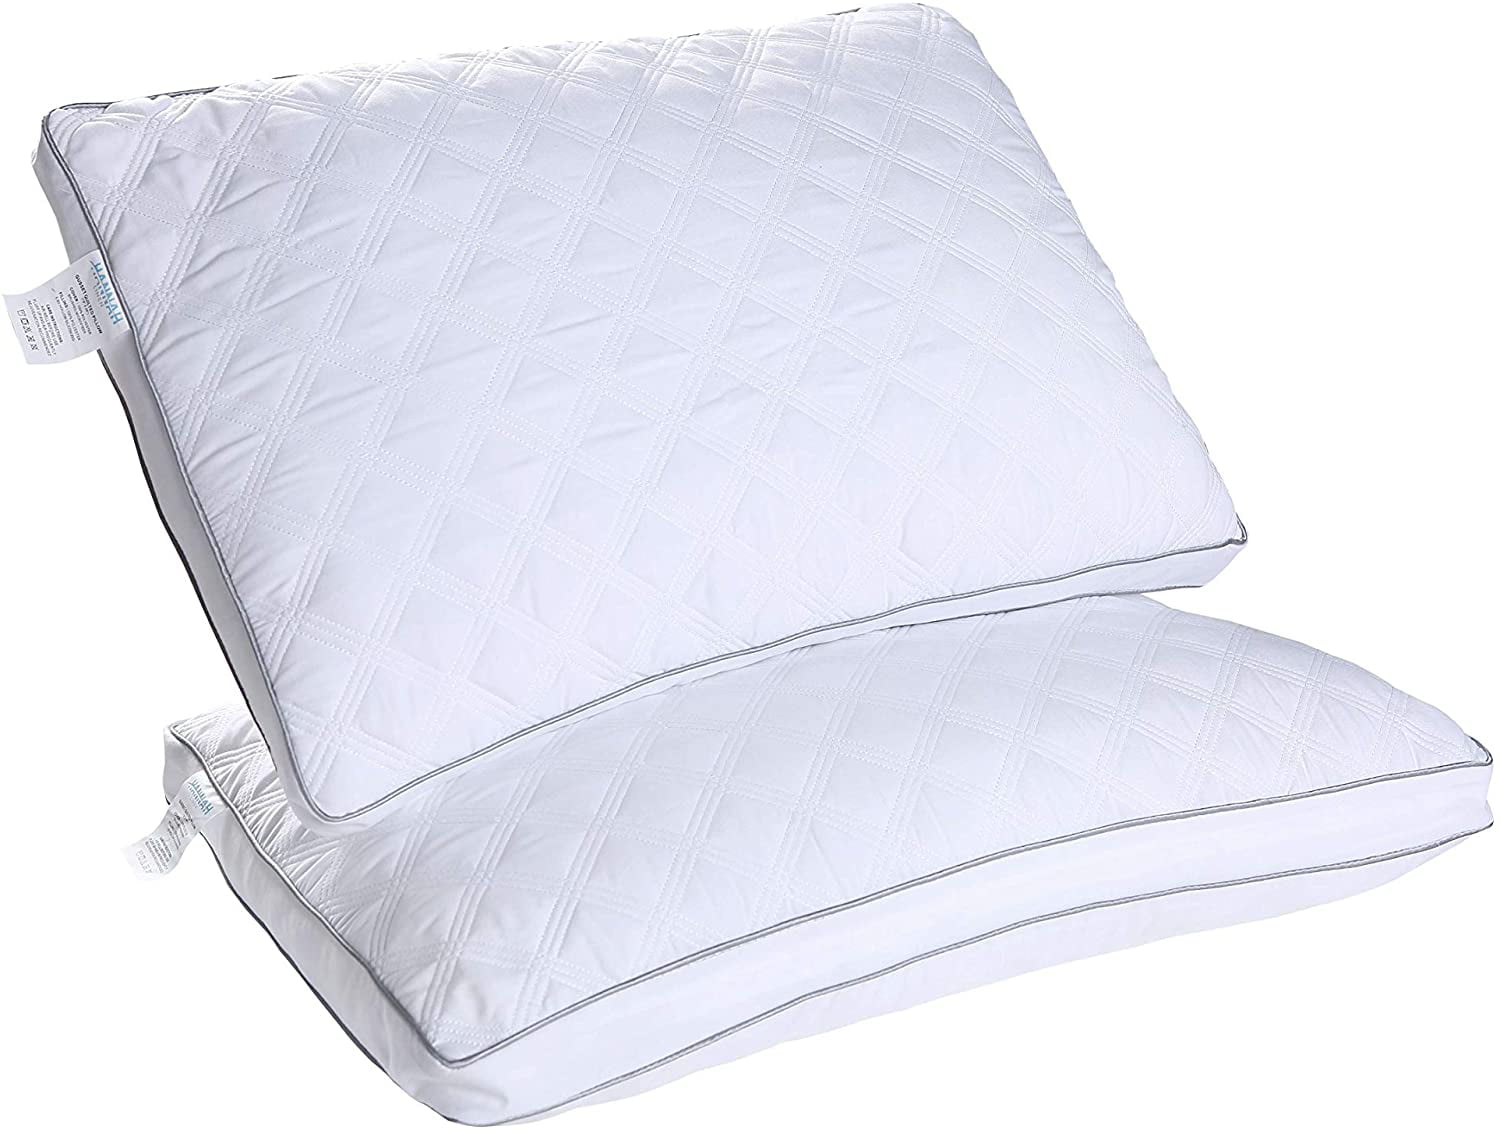 mattress firm neck pillow